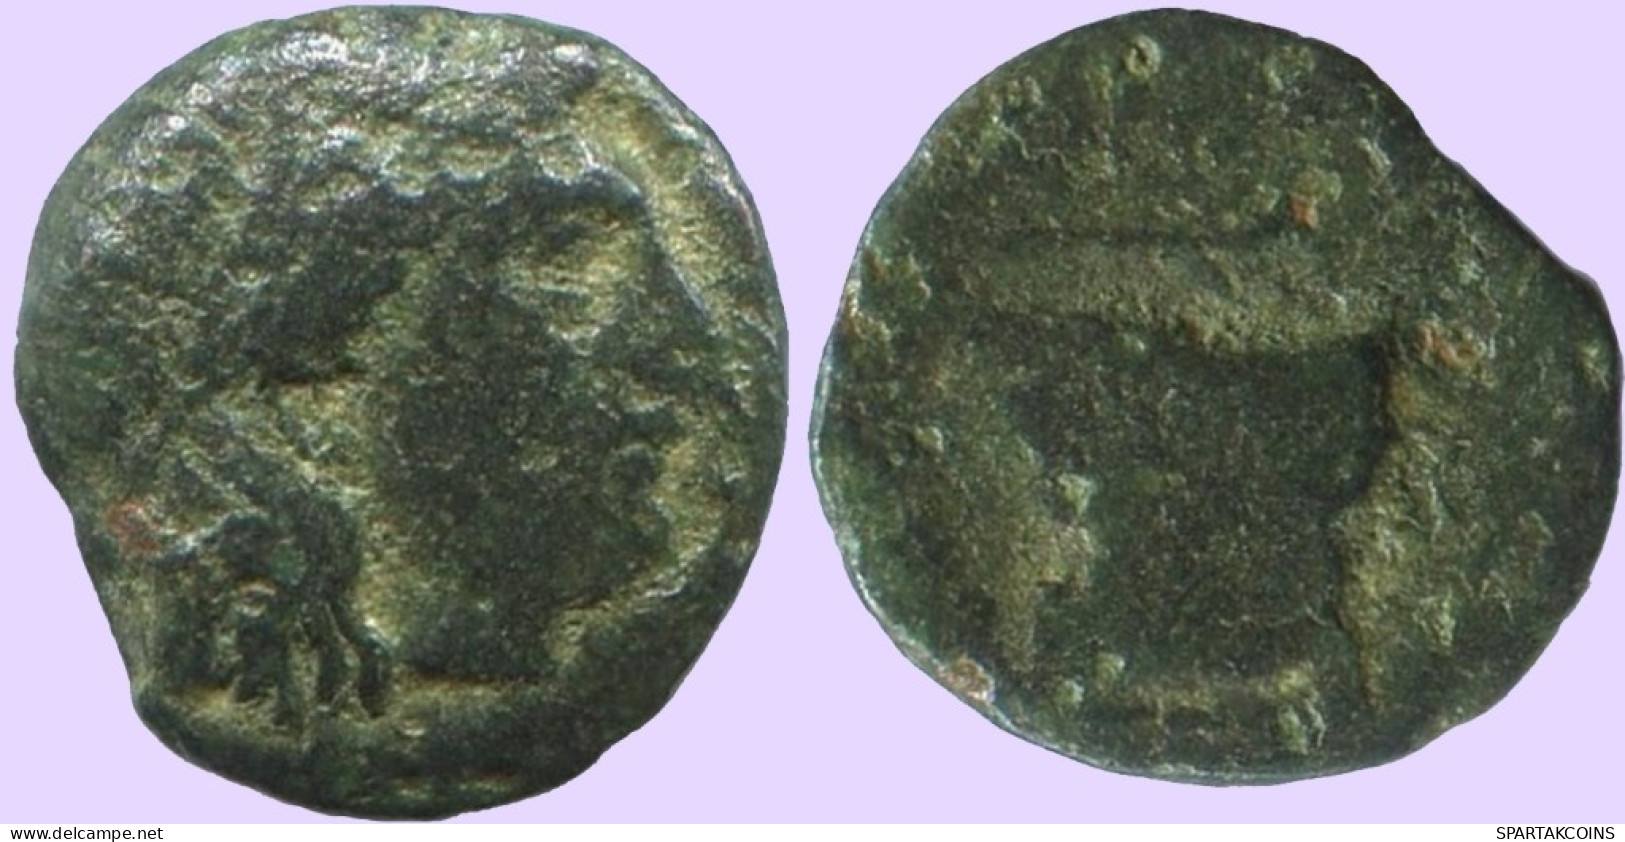 Antiguo Auténtico Original GRIEGO Moneda 0.4g/8mm #ANT1716.10.E.A - Griekenland